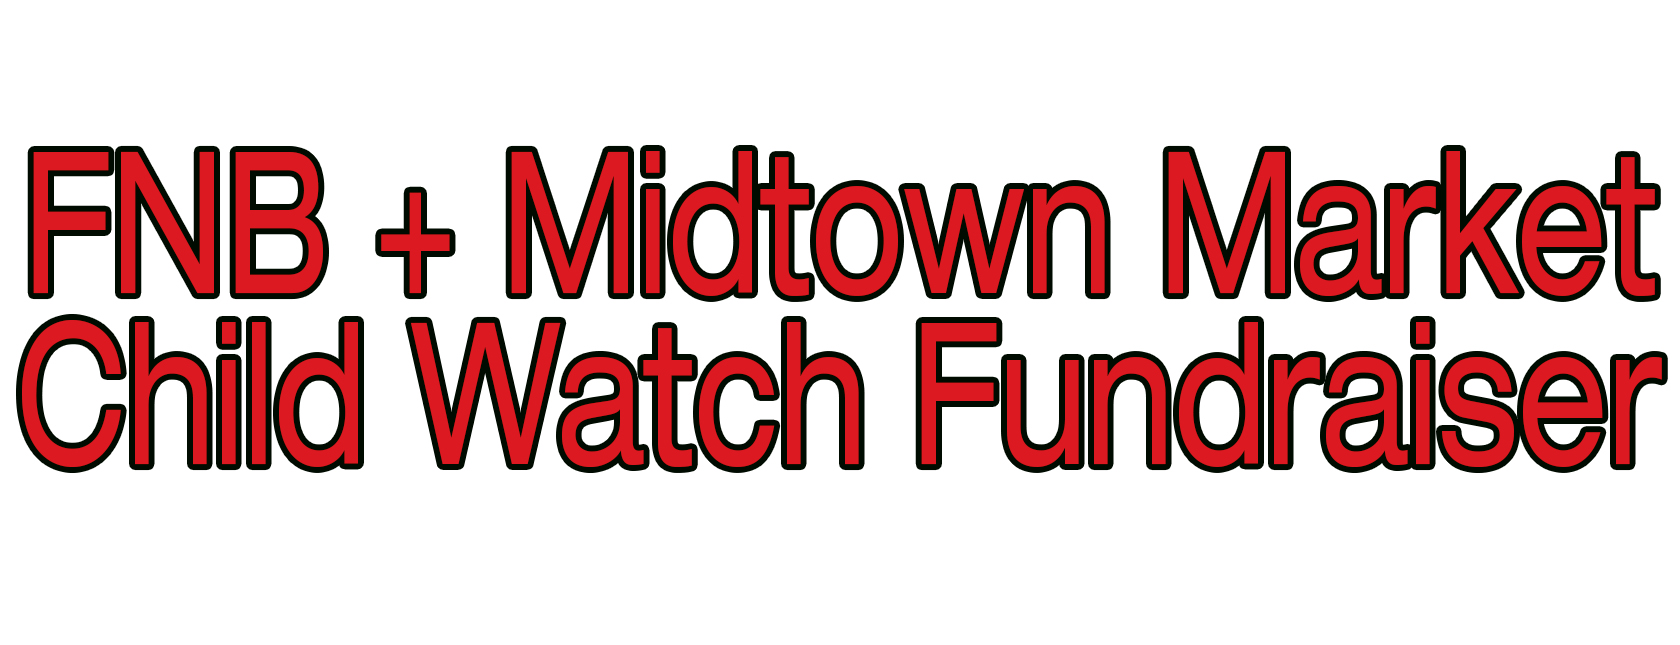 Child Watch Fundraiser